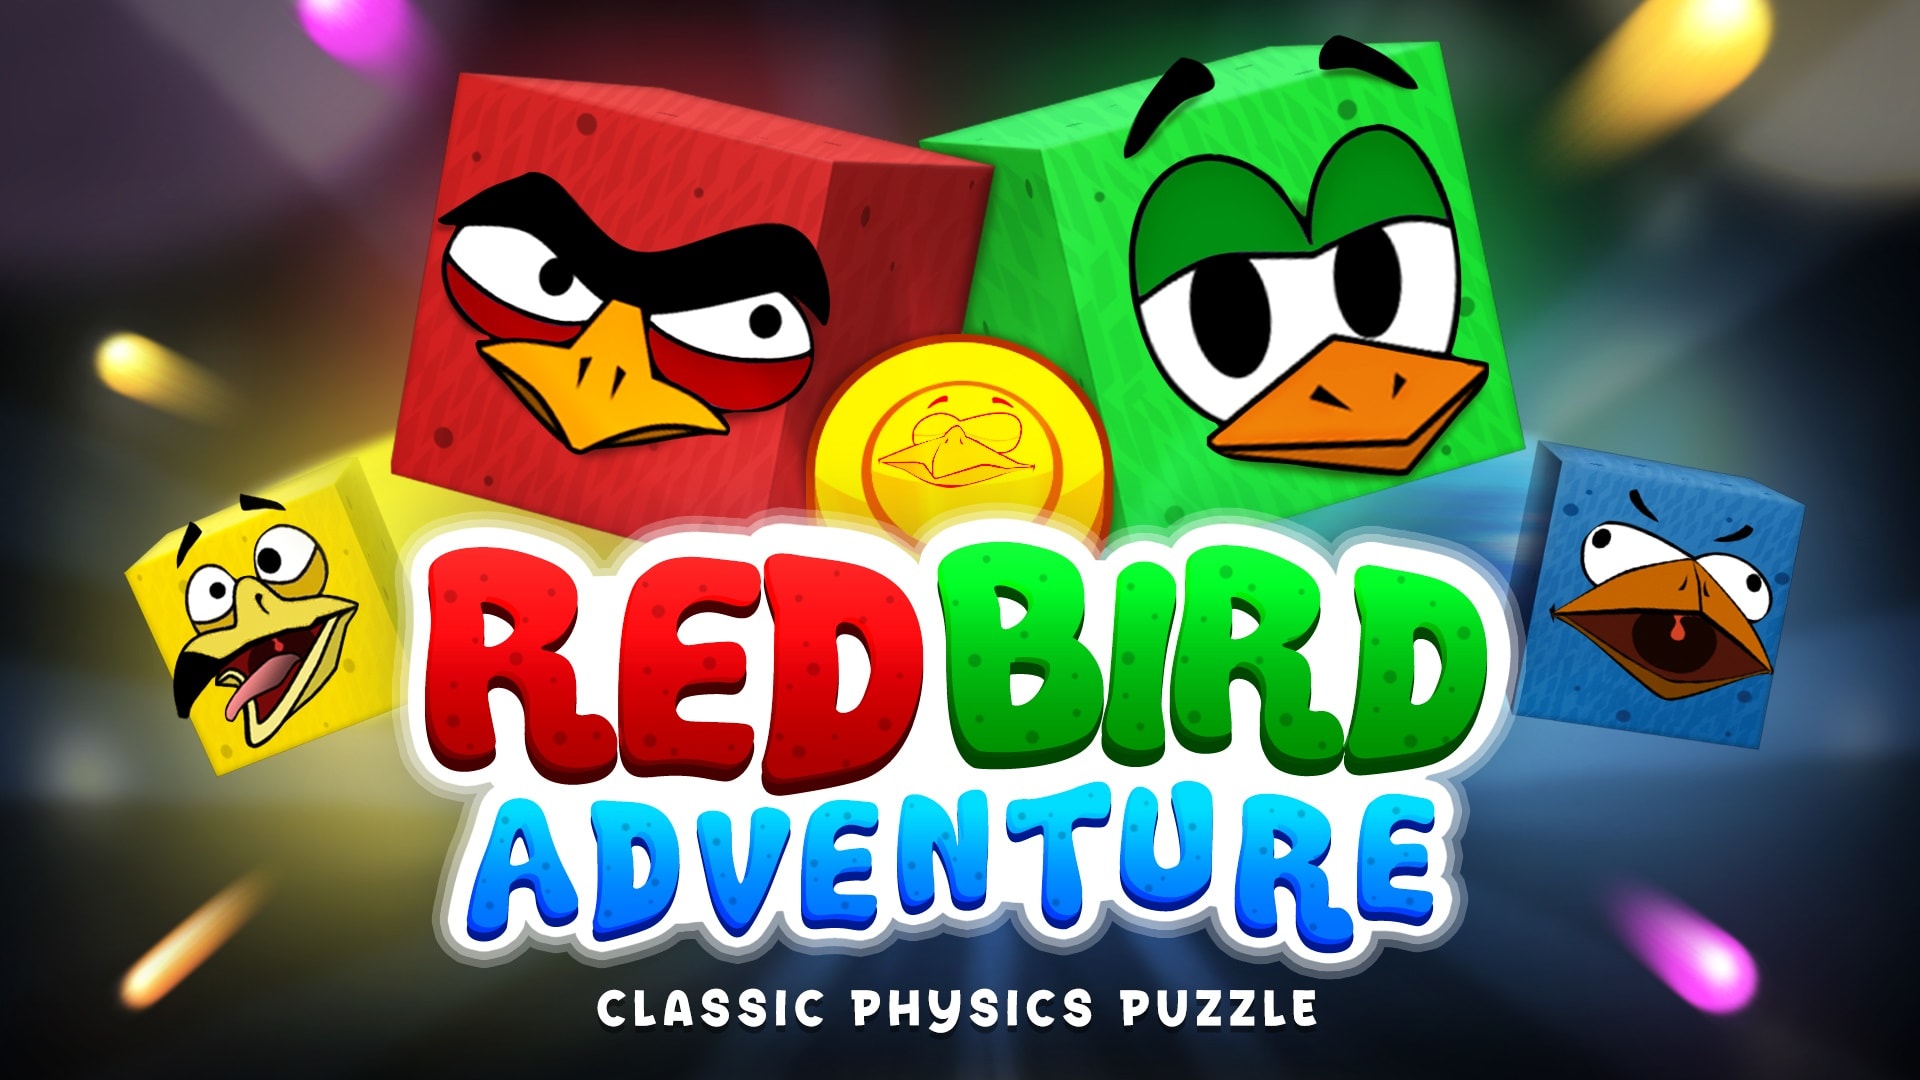 Red Bird Adventure: Classic Physics Puzzle